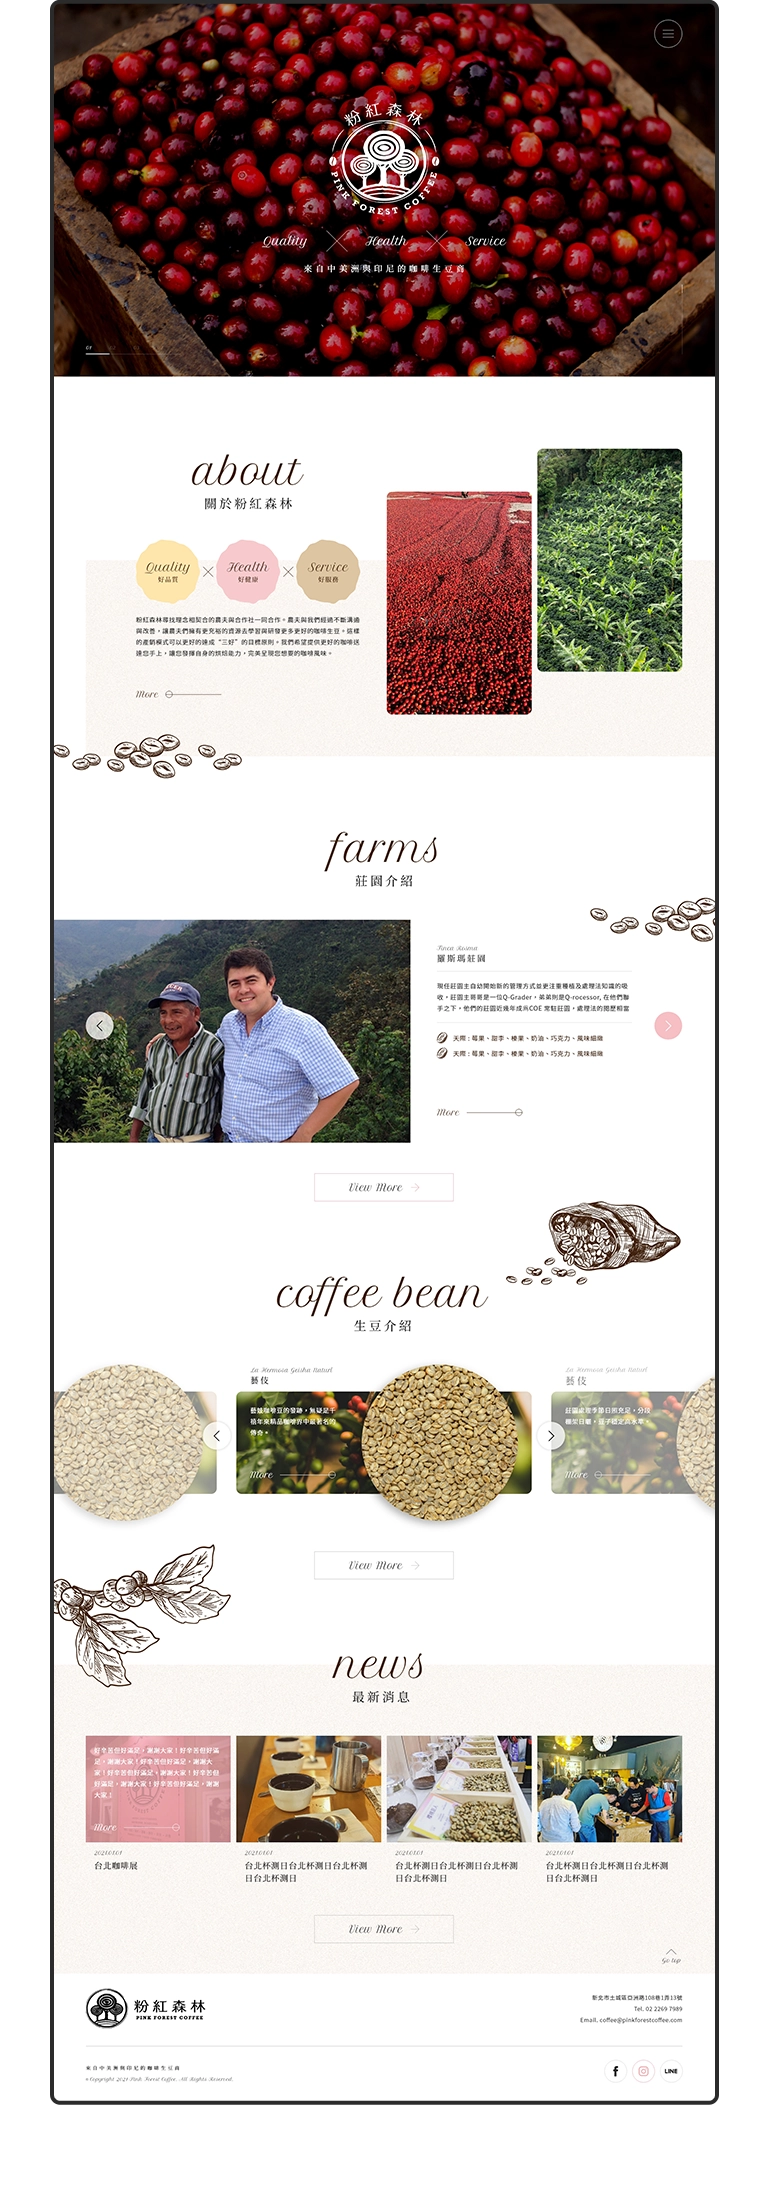 台北 粉紅森林咖啡生豆商 RWD形象官網/網站設計/平面設計/dm設計/型錄設計/展場設計 手機版(9)